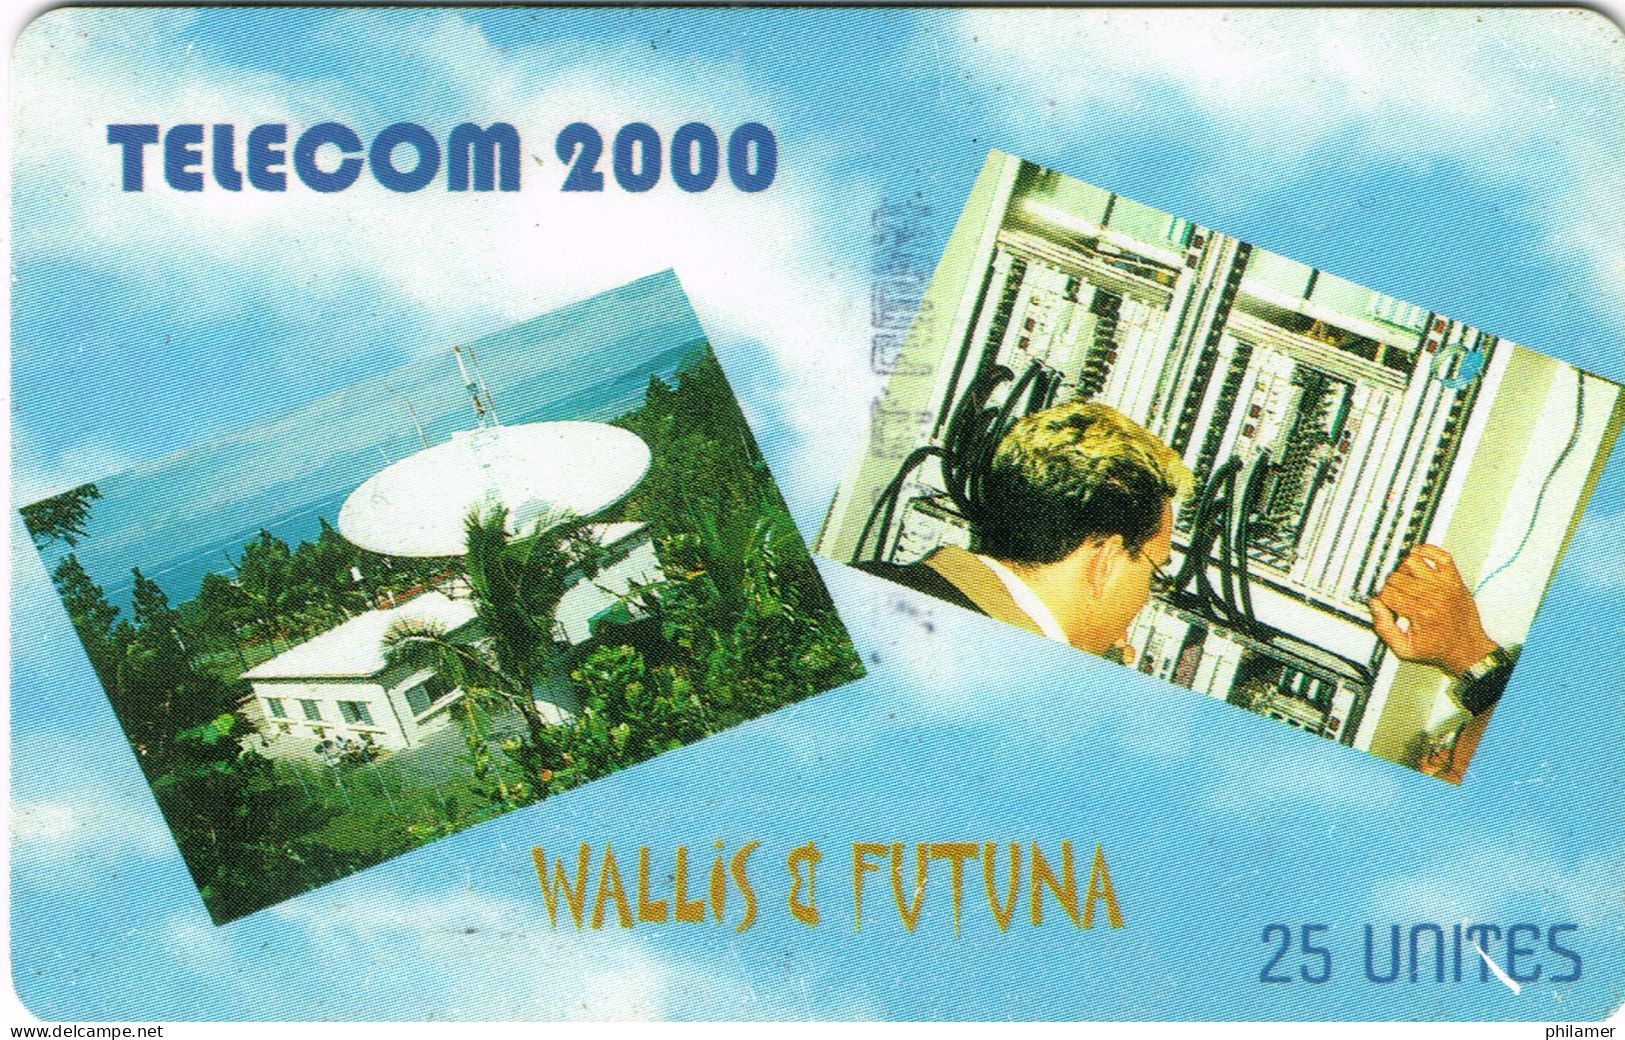 Wallis Et Futuna Uvea Mo Futuna France Telecarte Phonecard WF14 Non Numerotee Telecom 2000 Radar Parabole UT BE - Wallis And Futuna